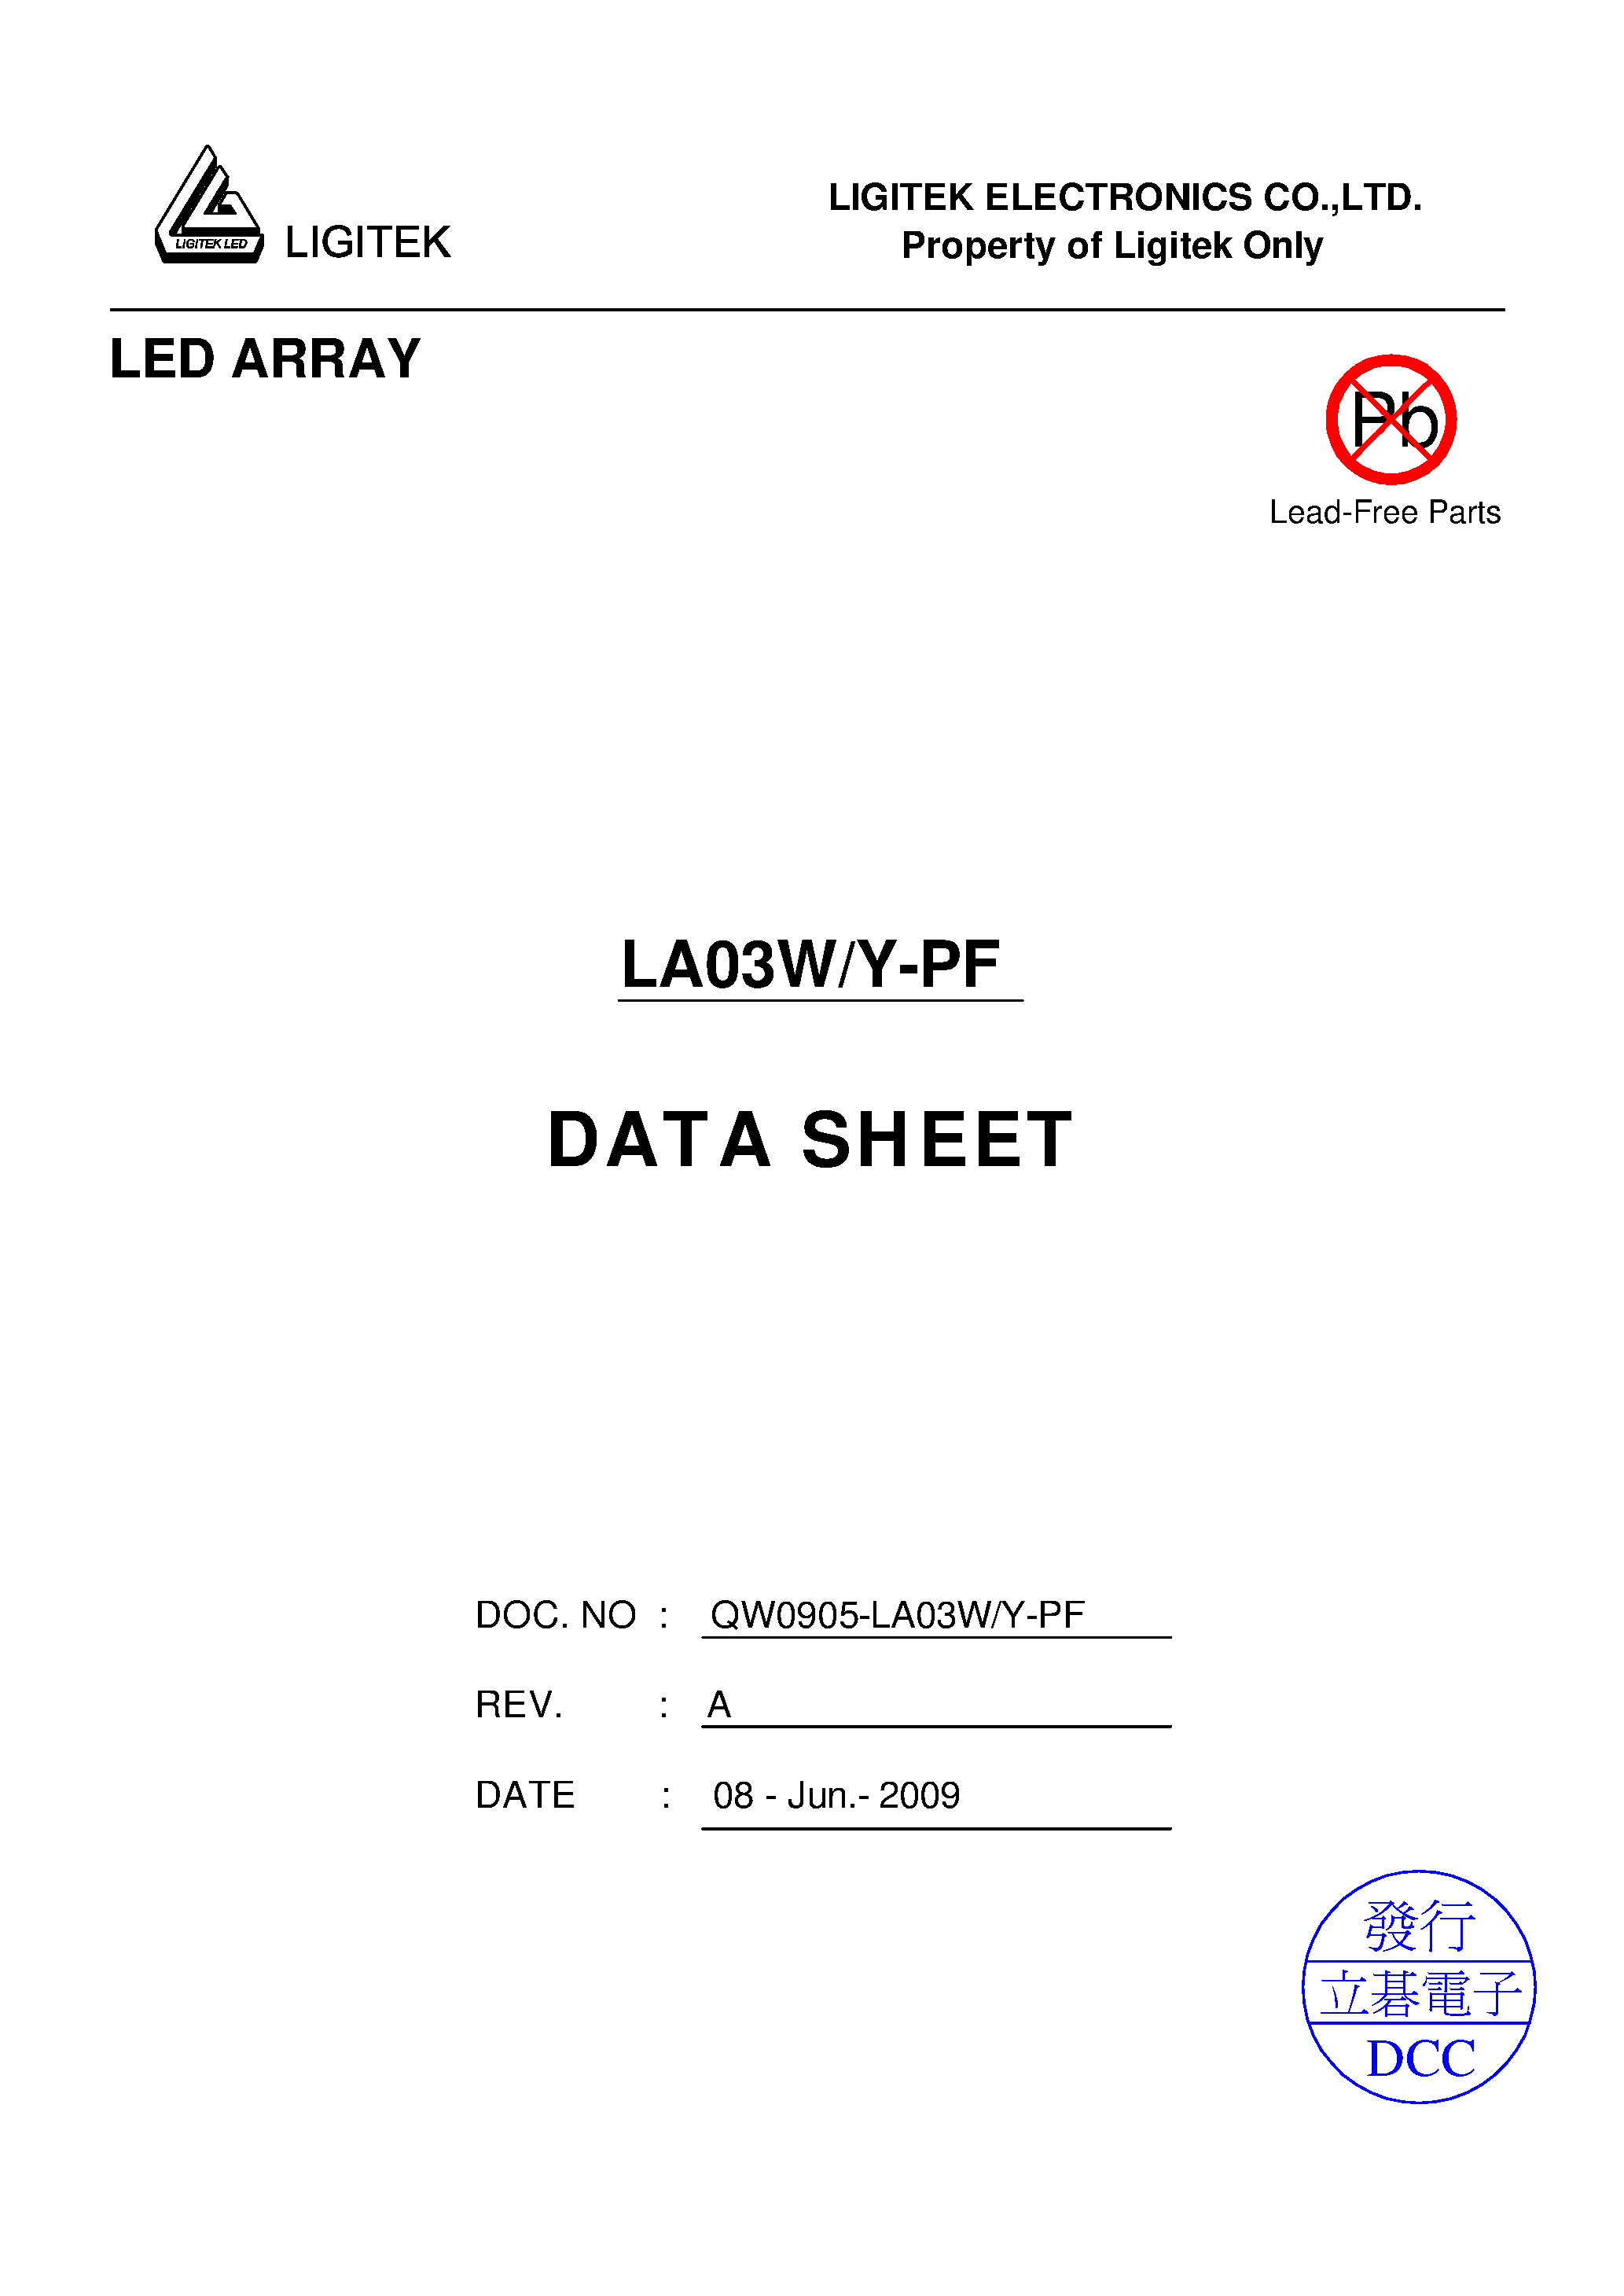 Даташит LA03W-Y-PF - LED ARRAY страница 1